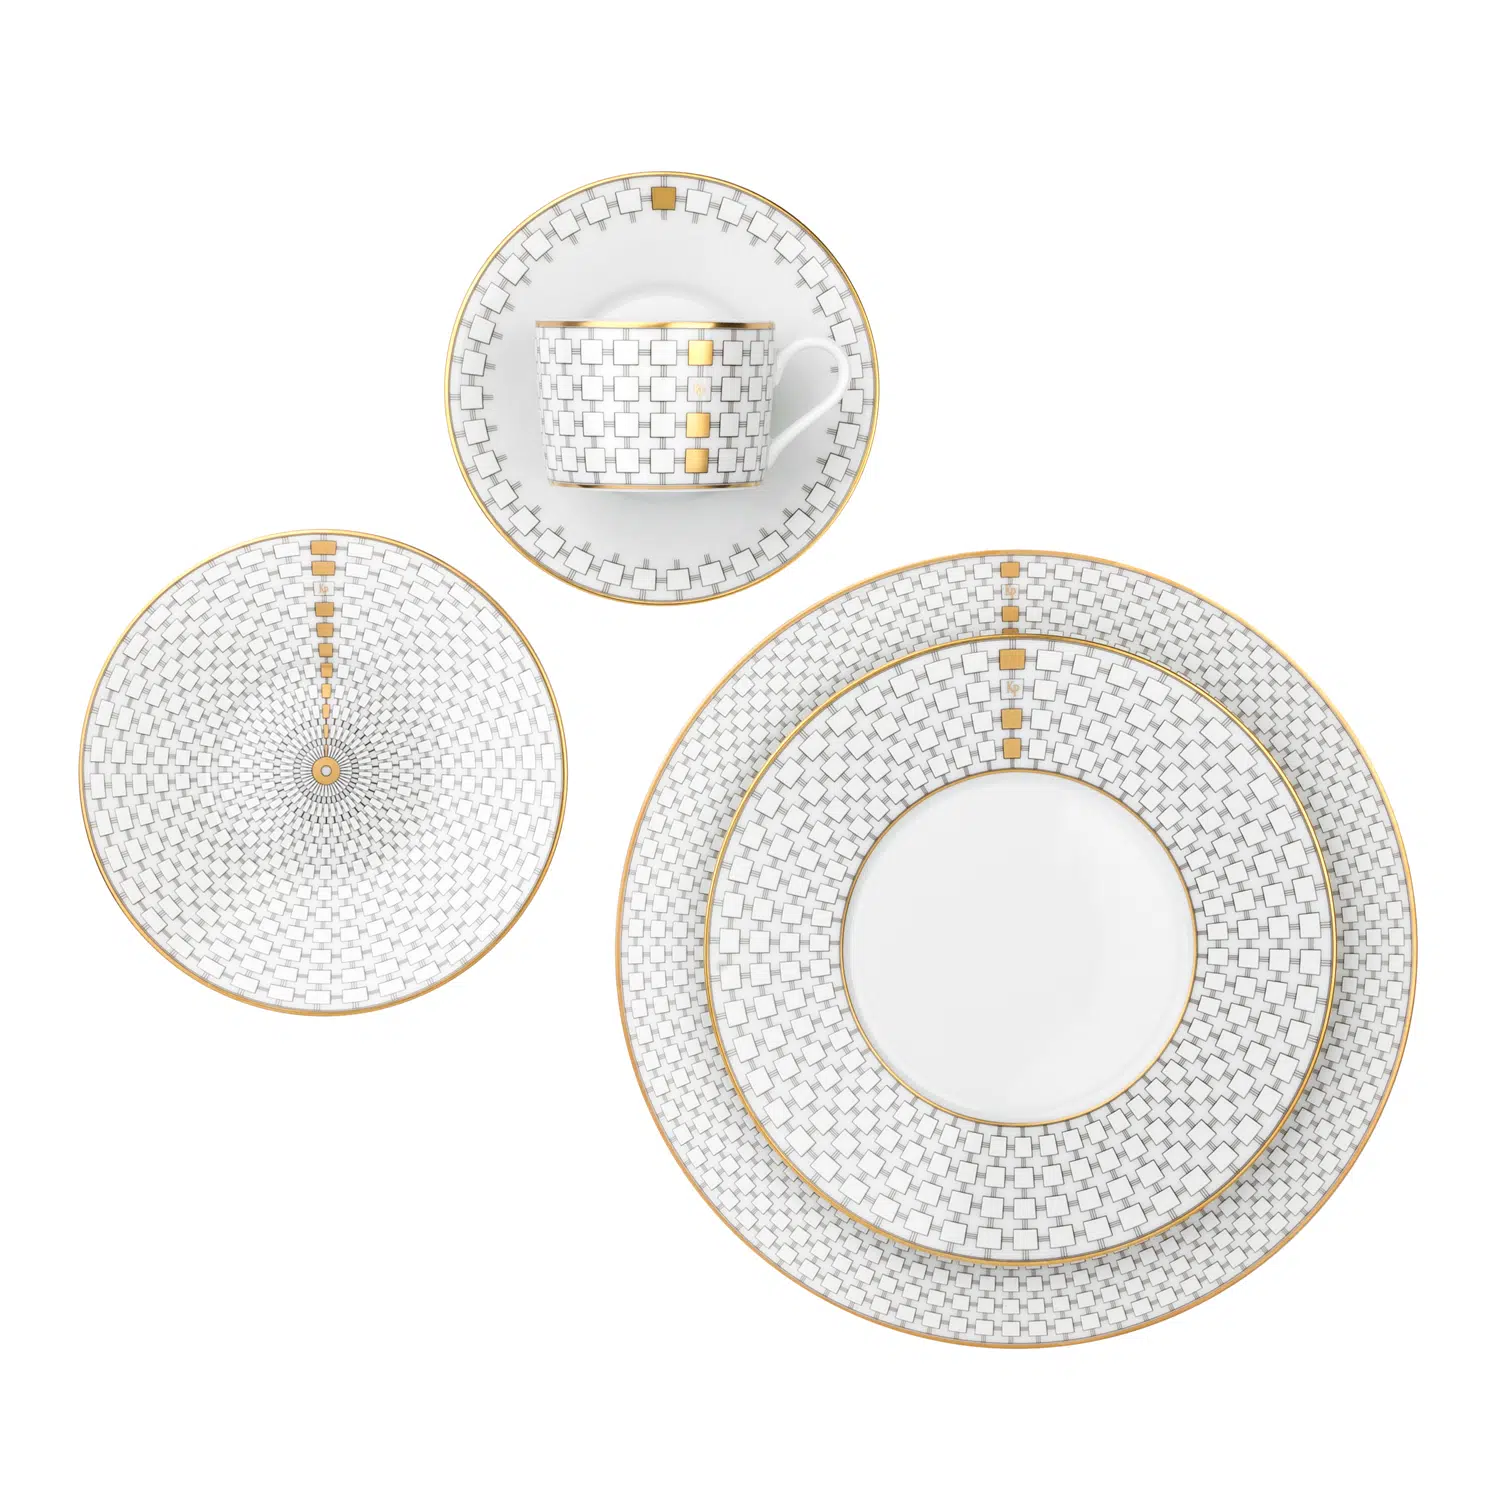 Luxury gold tableware